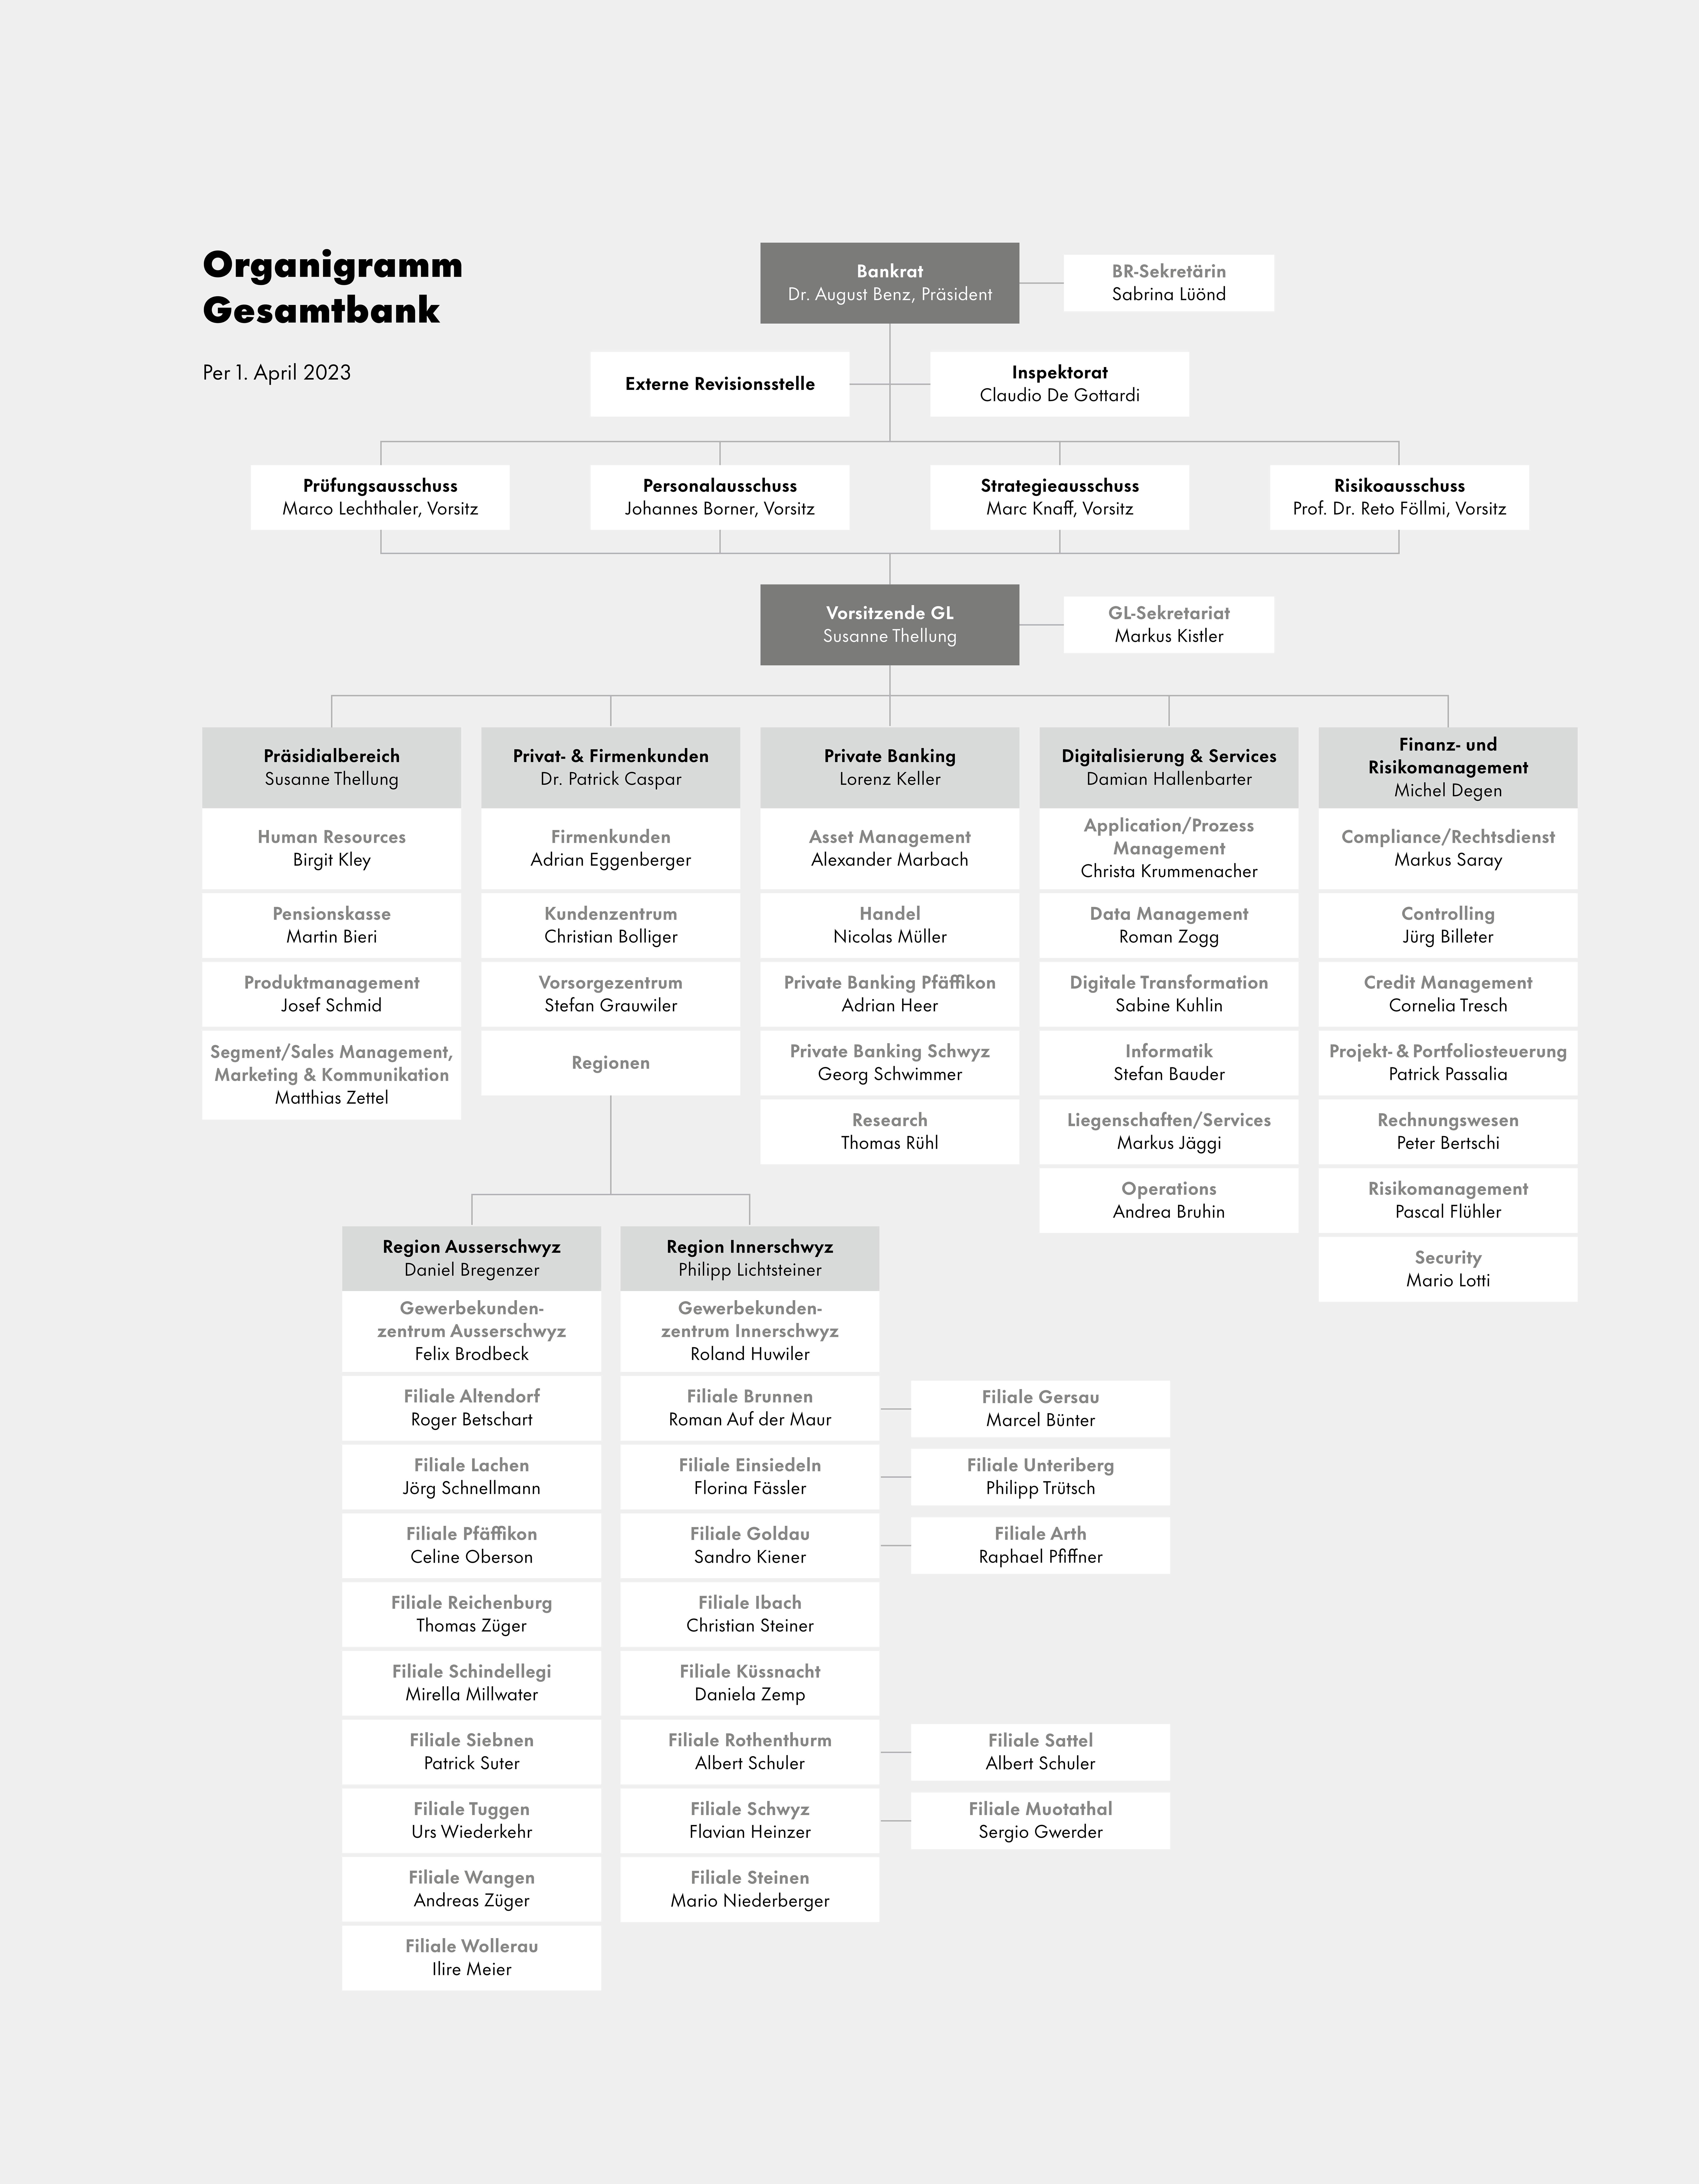 Grafik Organigramm aus Geschäftsbericht 2022